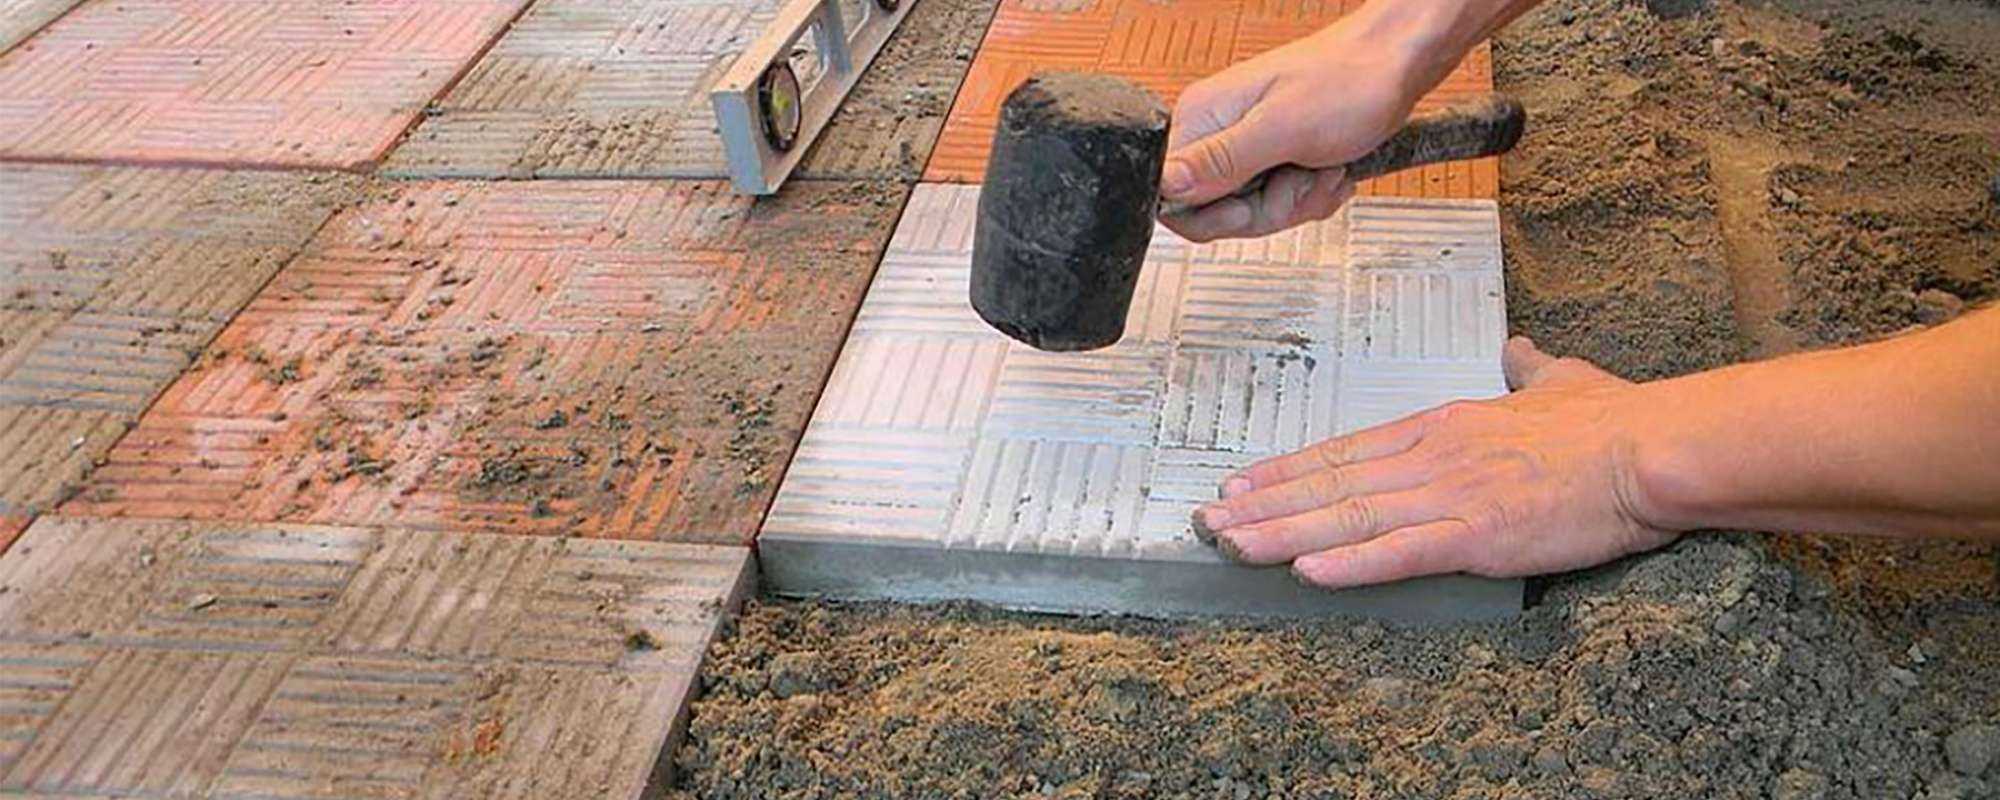 Как сделать вибратор для бетона своими руками — агрегаты для уплотнения смеси